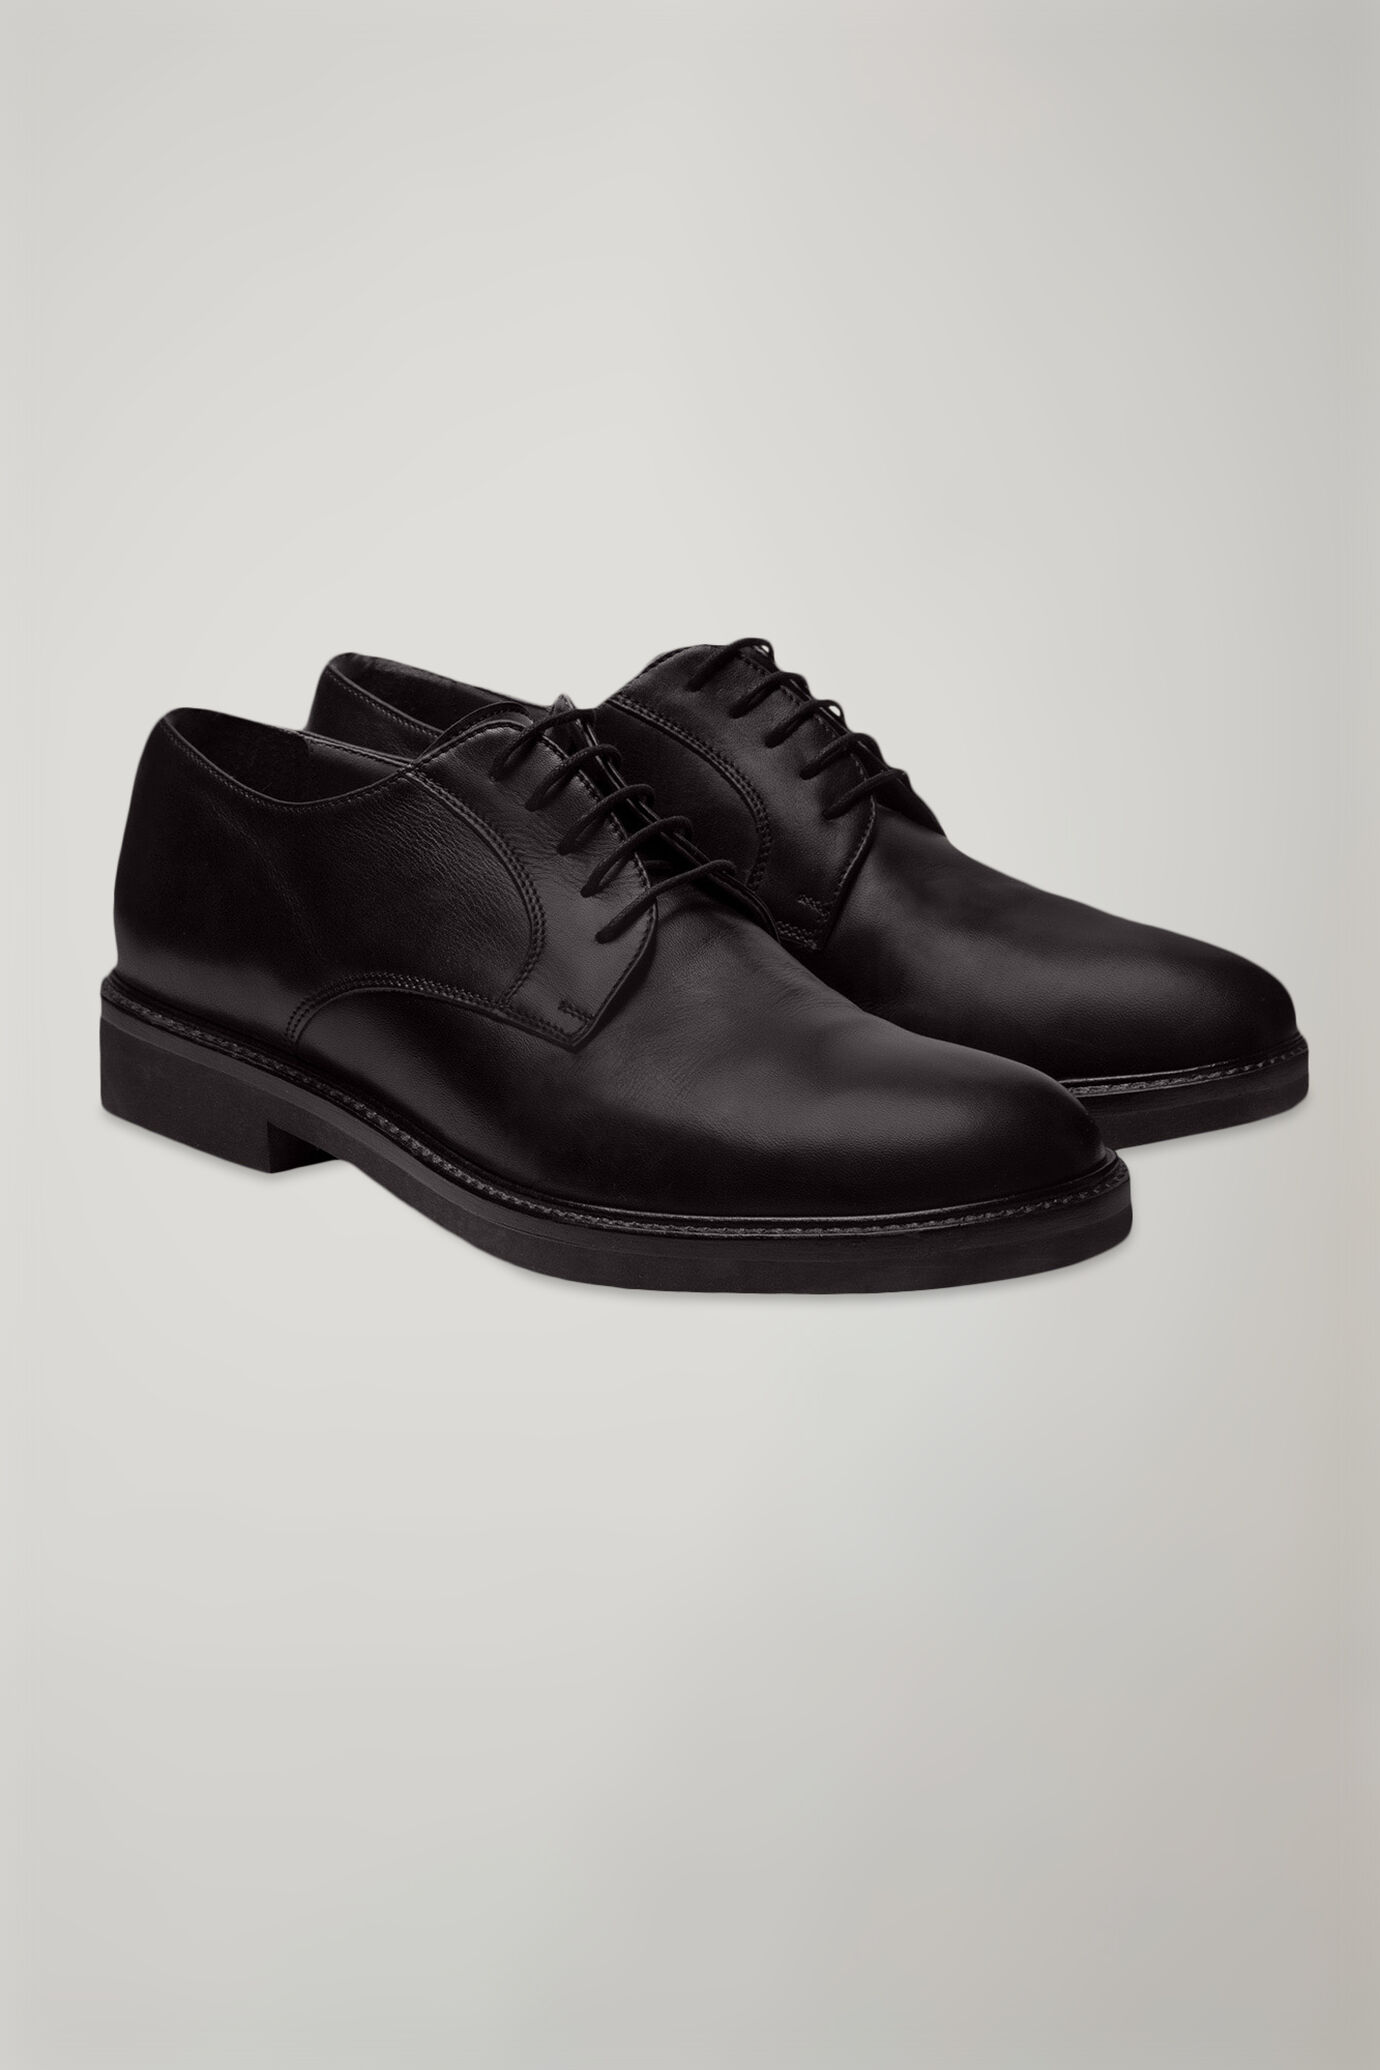 Doppelganger Man's Shoes | Official Online Shop